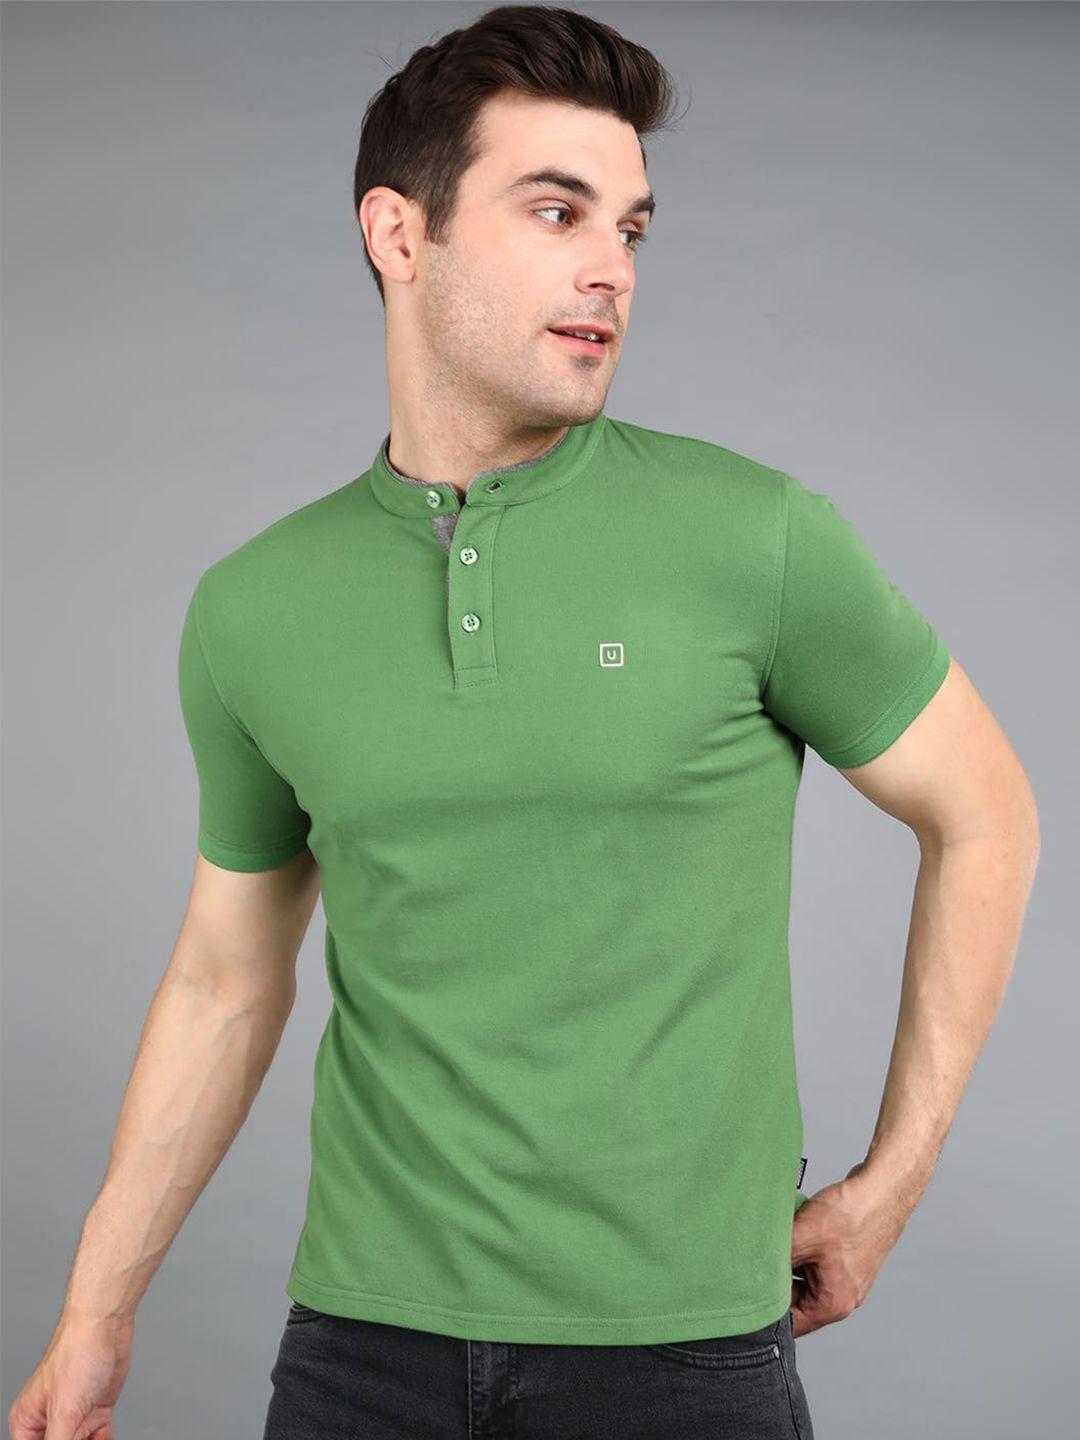 urbano fashion mandarin collar slim fit cotton t-shirt